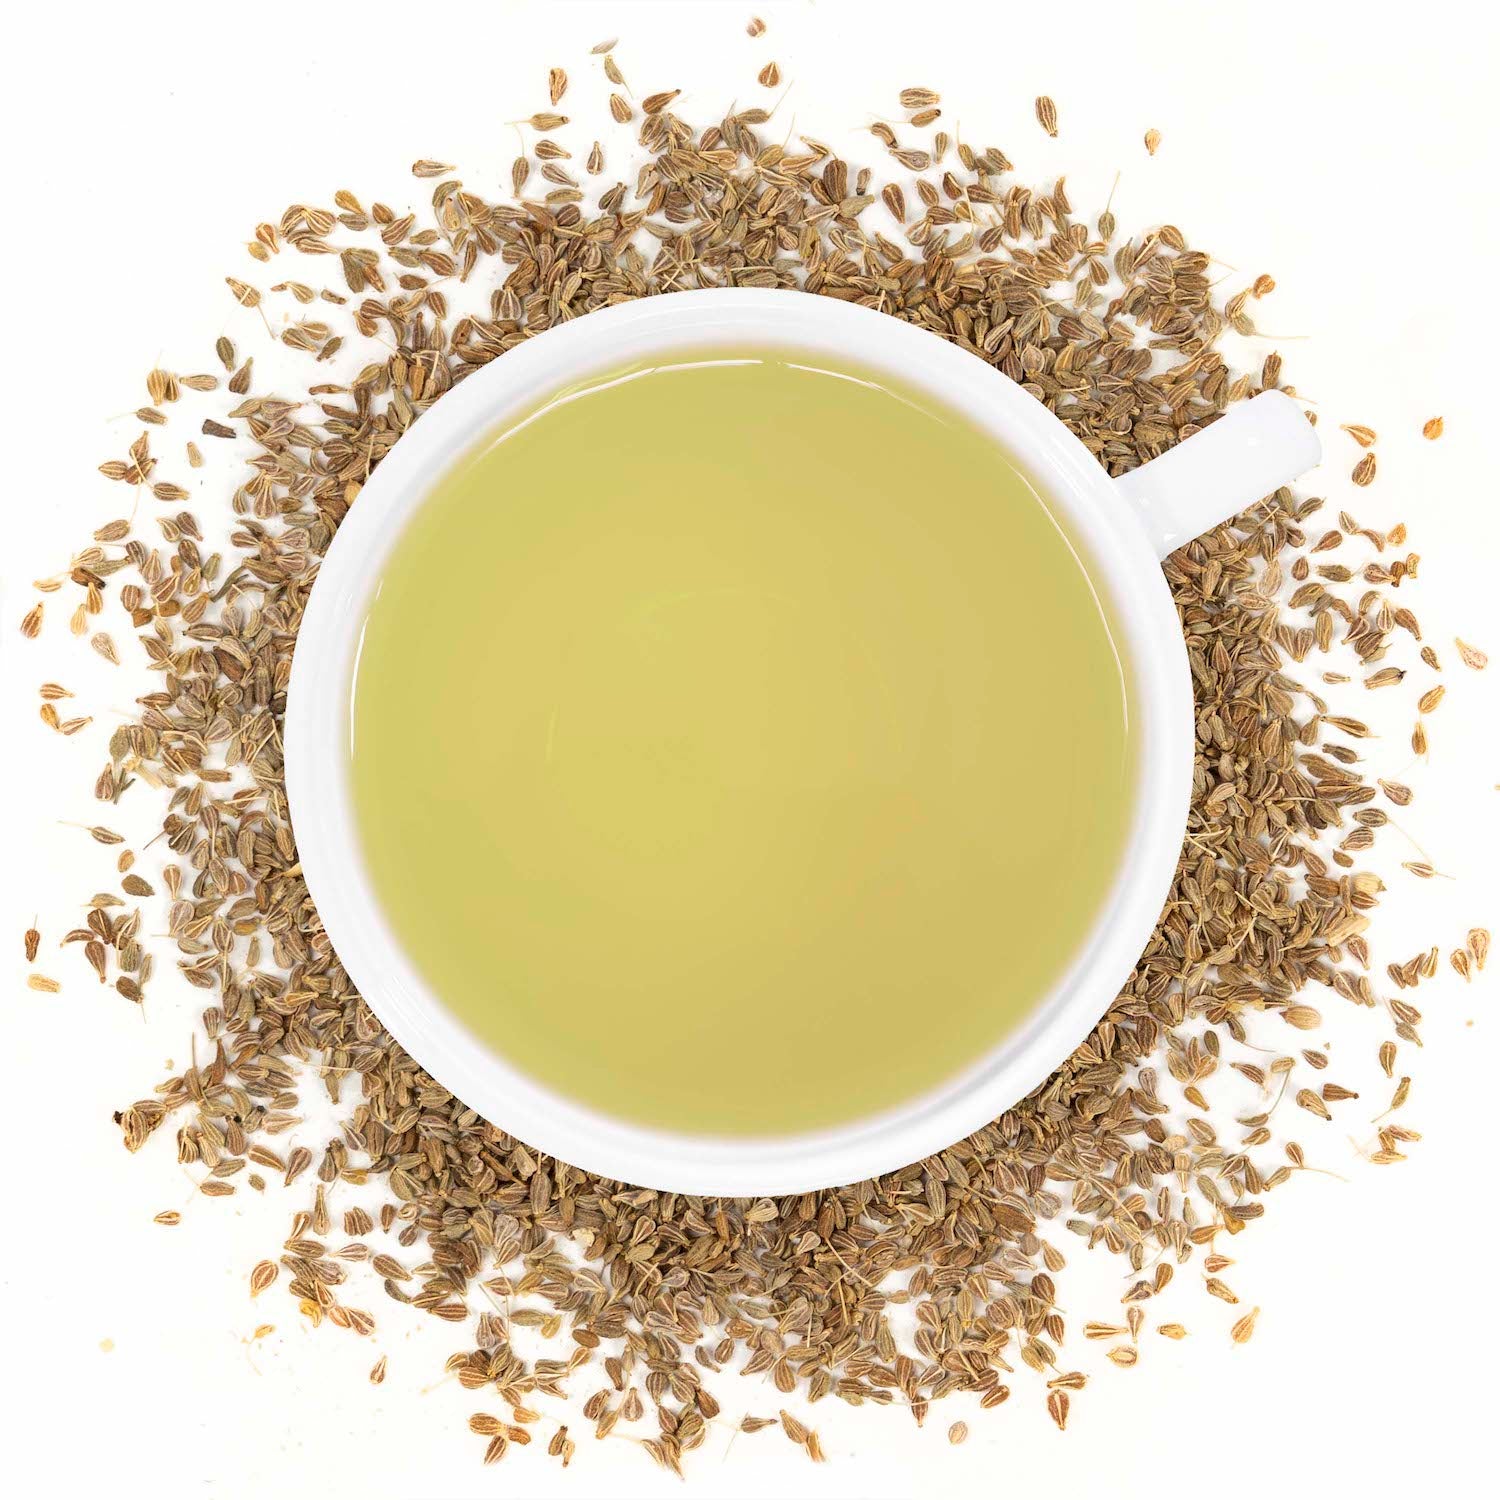 Organic Anise Seed - Loose Leaf Tea - Full Leaf Tea Company